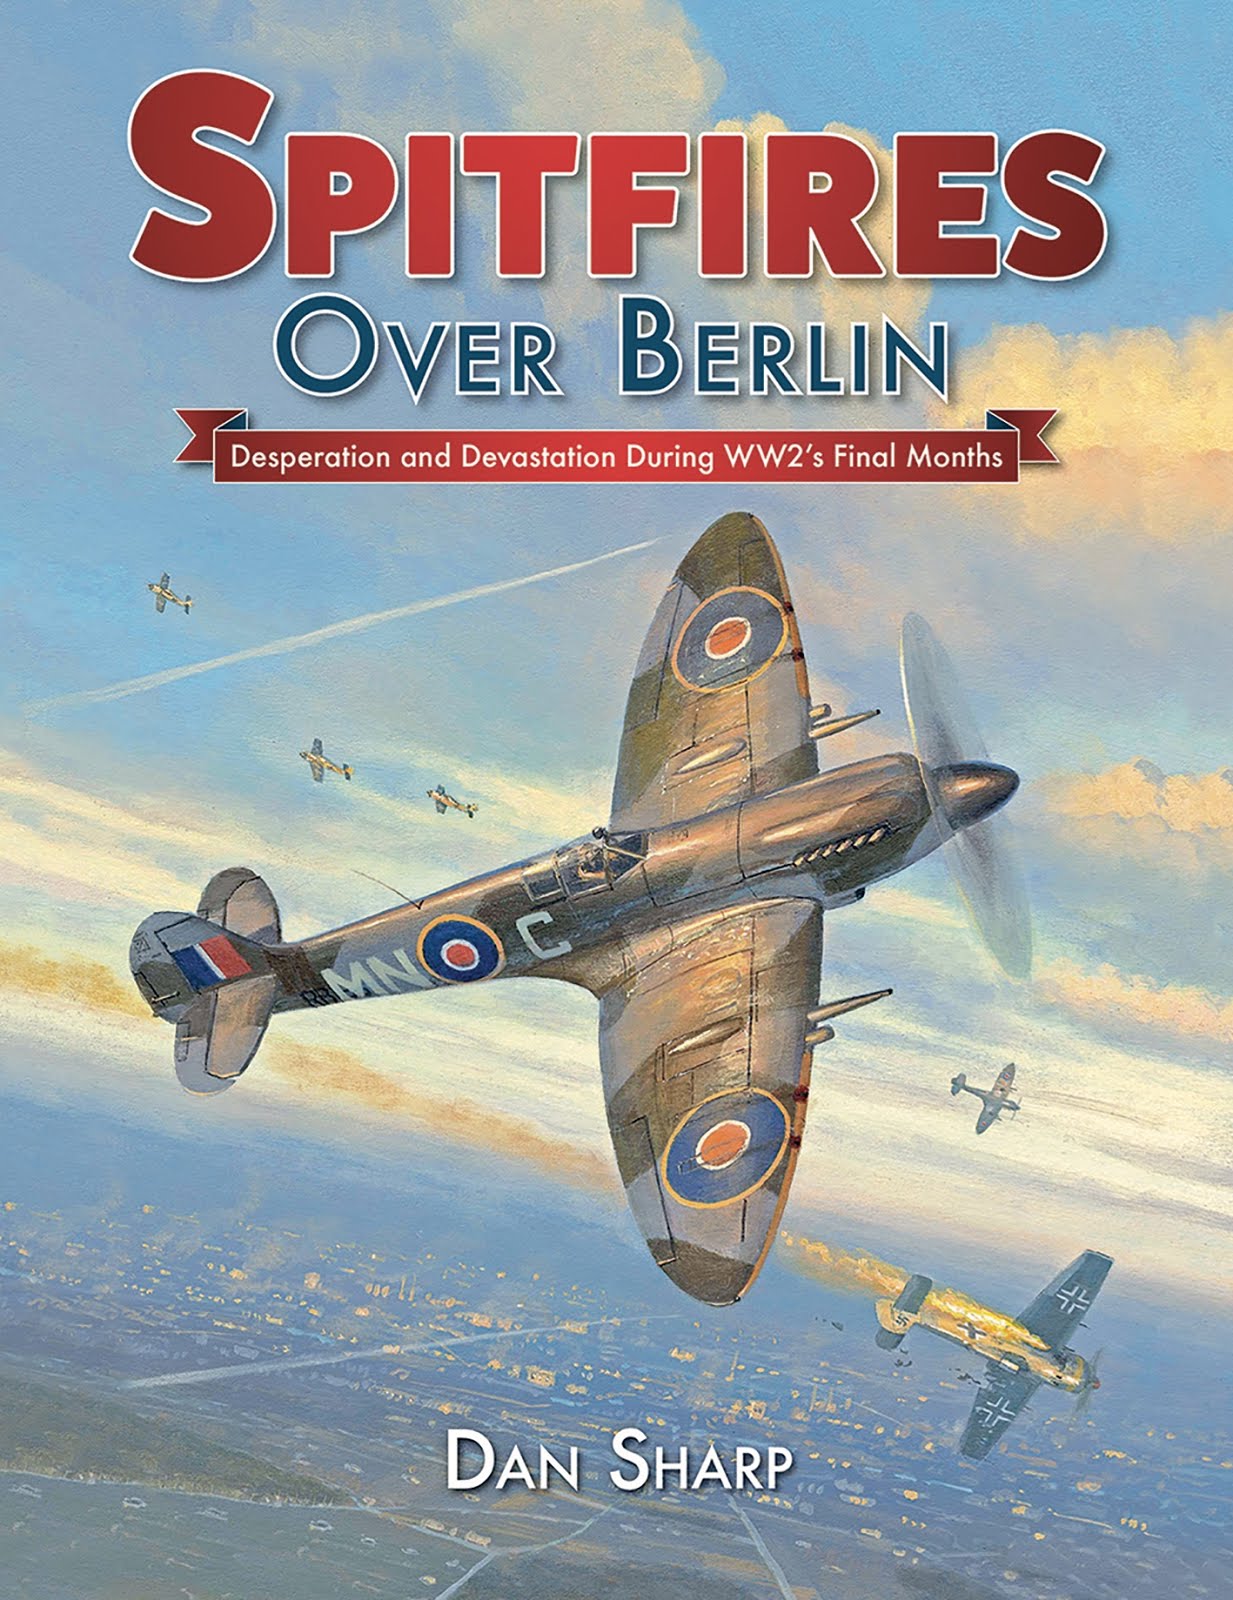 Spitfires over Berlin